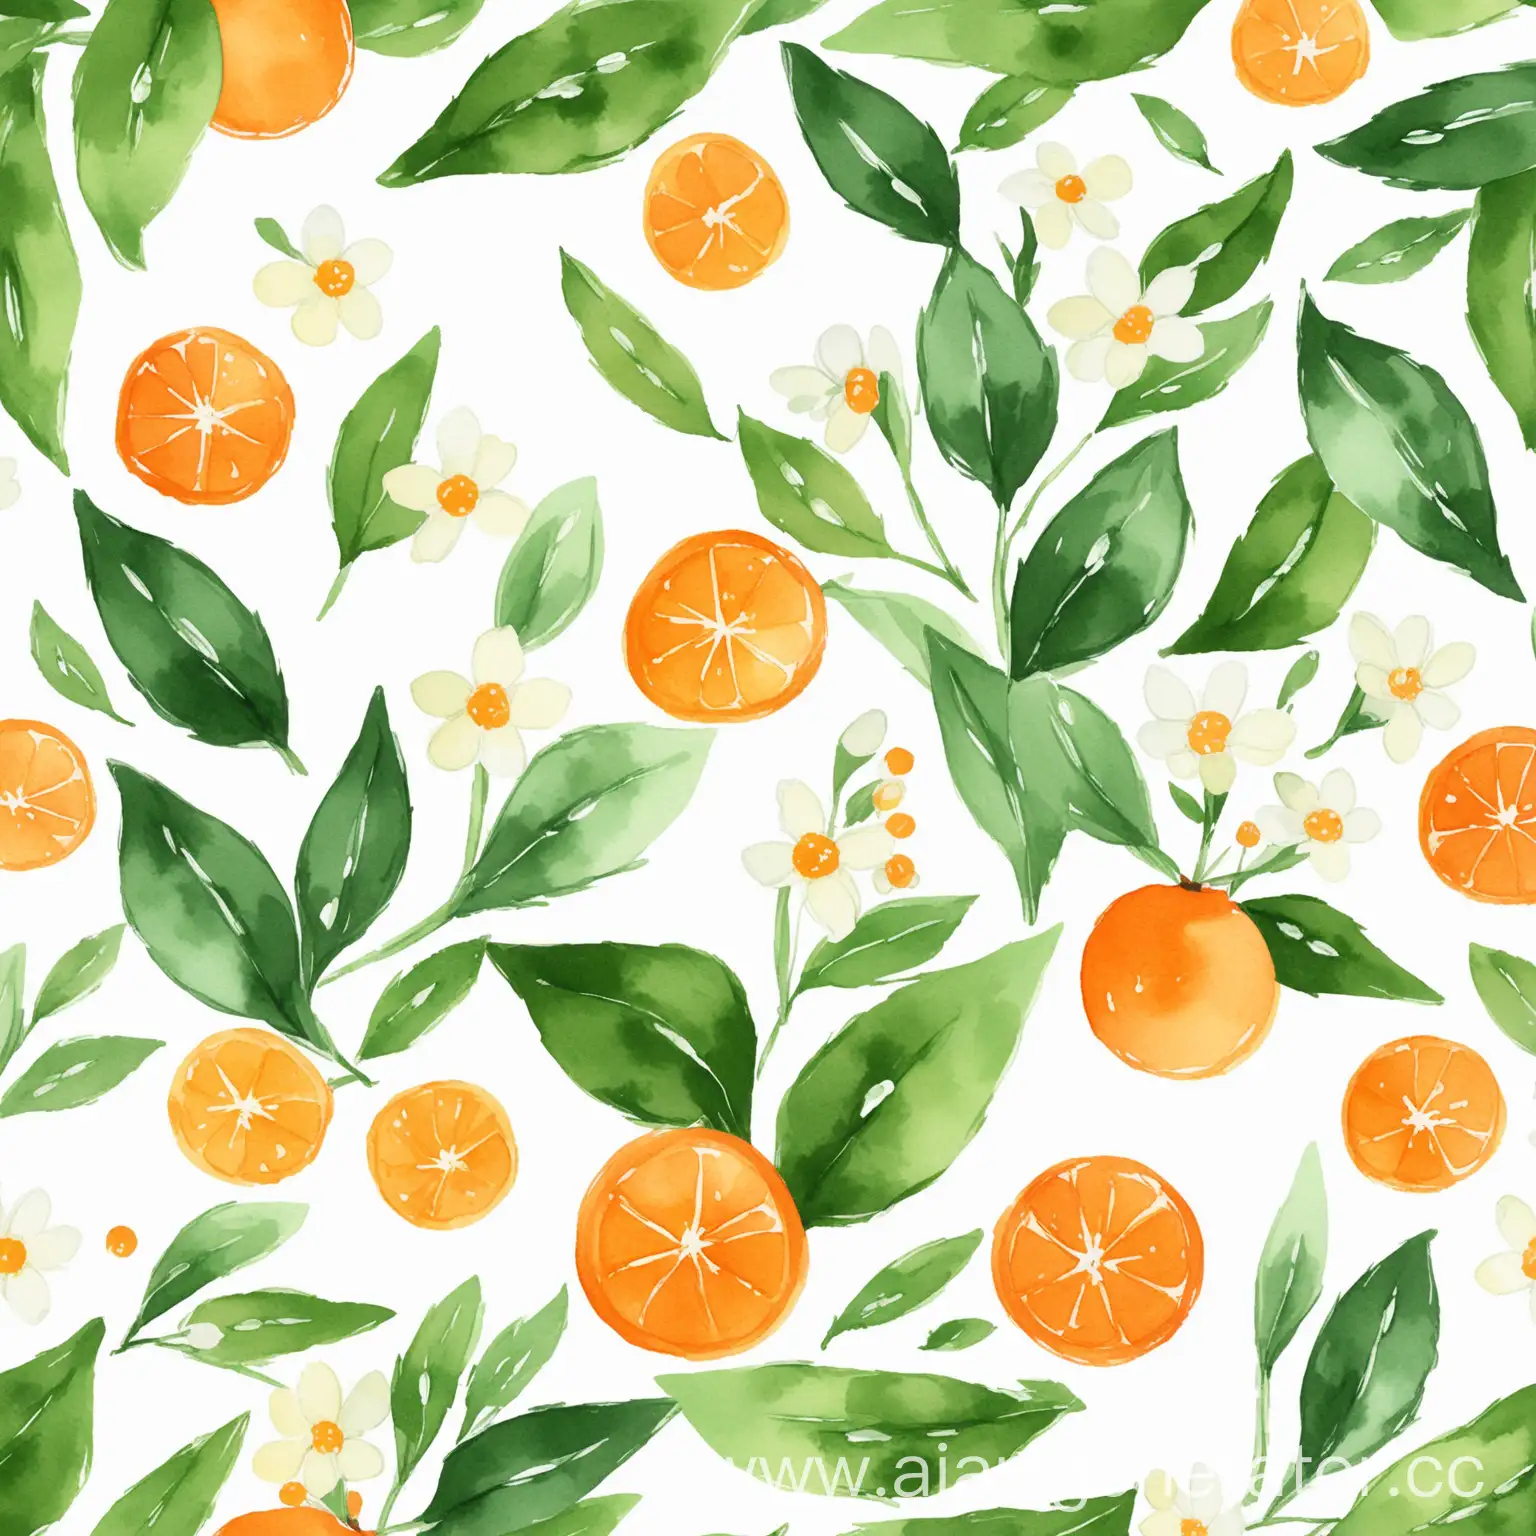 оранжевый принт для платка с маленькими белыми цветочками с зелеными листьями акварельный в стиле минимализм